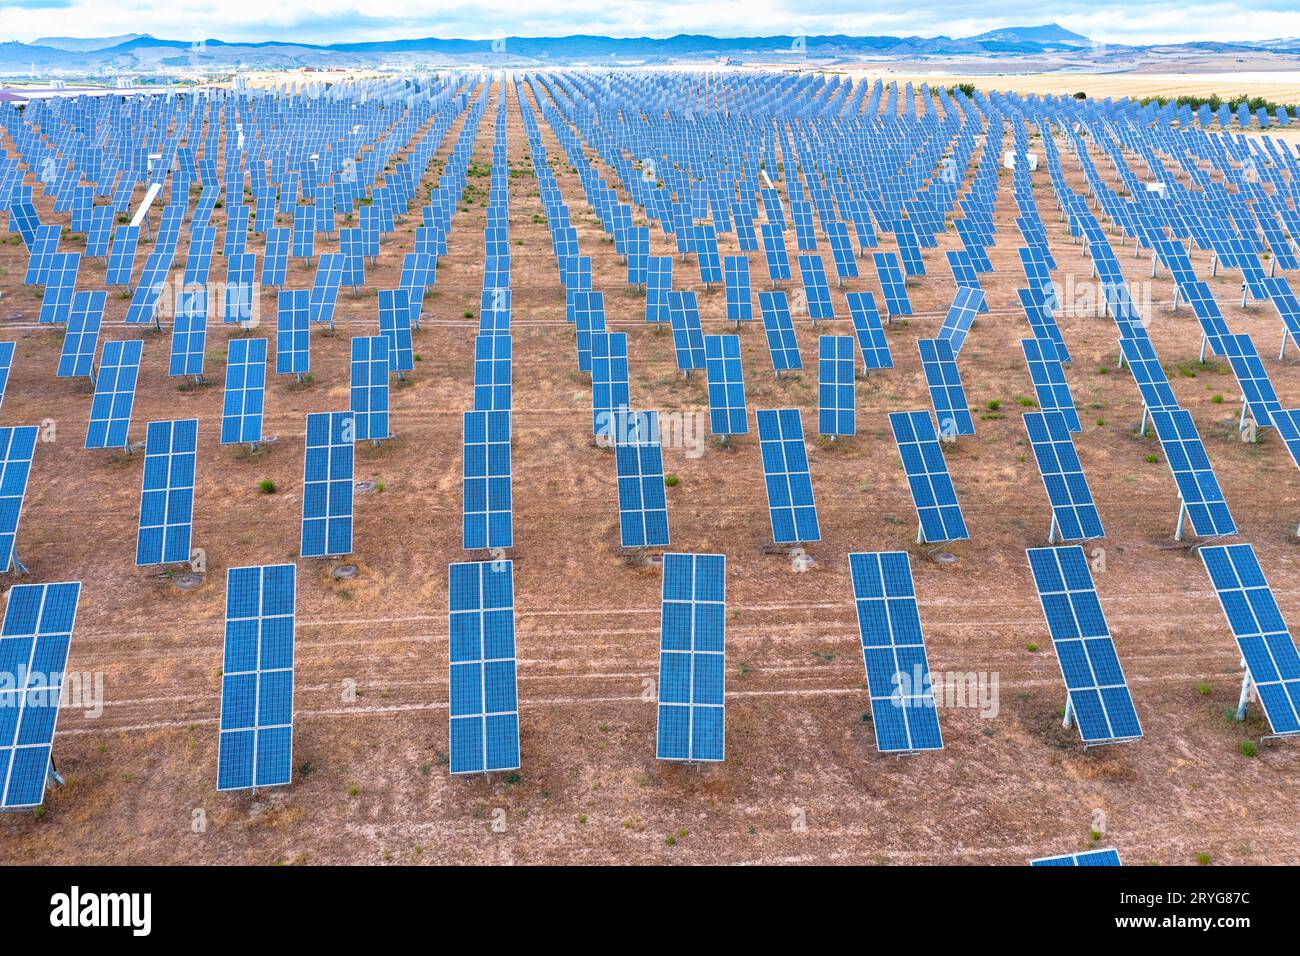 Vue aérienne d'une centrale solaire et de panneaux d'énergie solaire dans un champ rural. Navarre, Espagne. Europe. Concept d'environnement. Banque D'Images